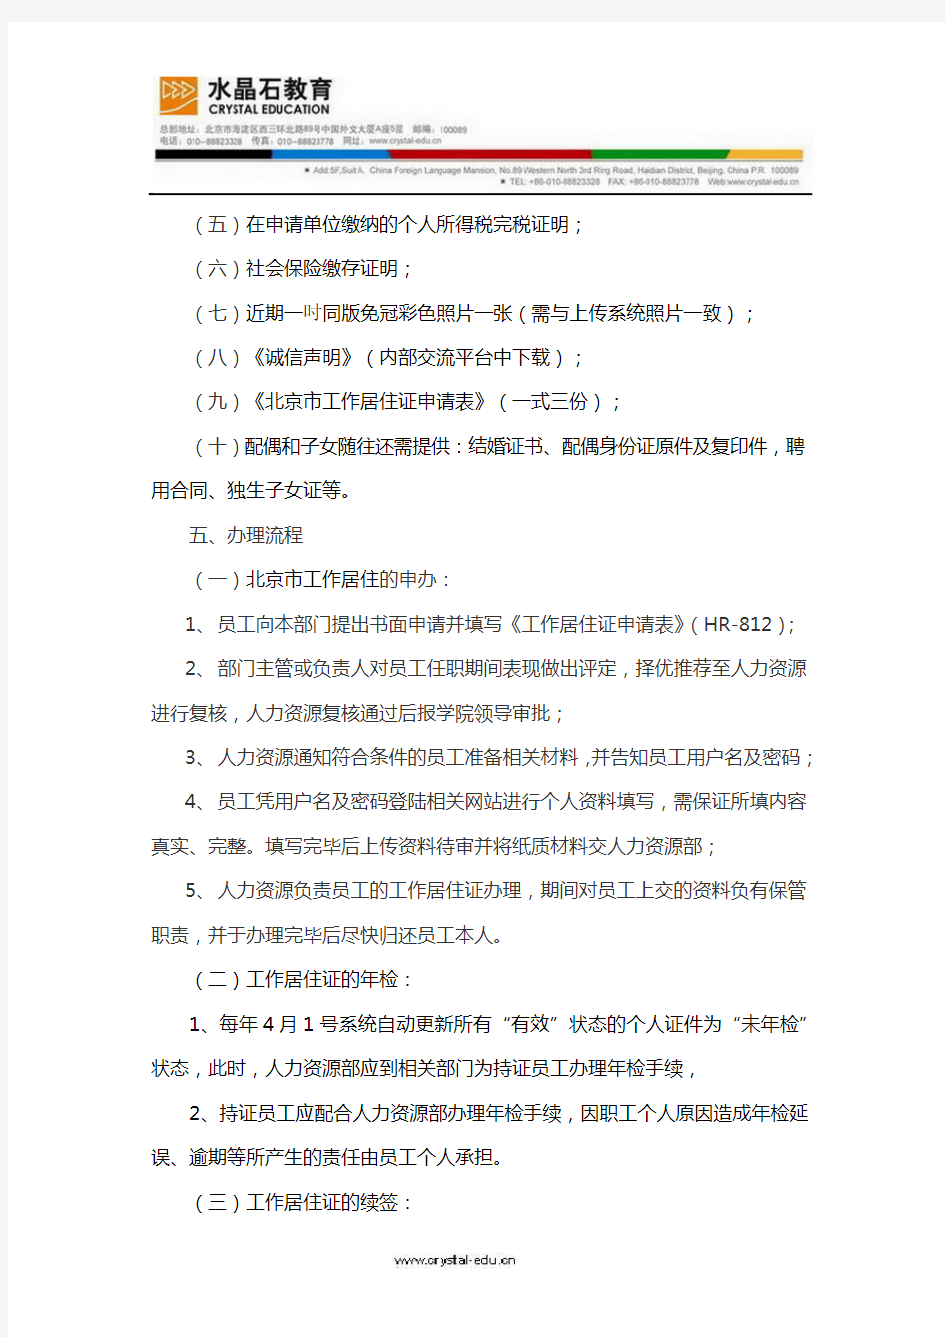 北京工作居住证管理规定